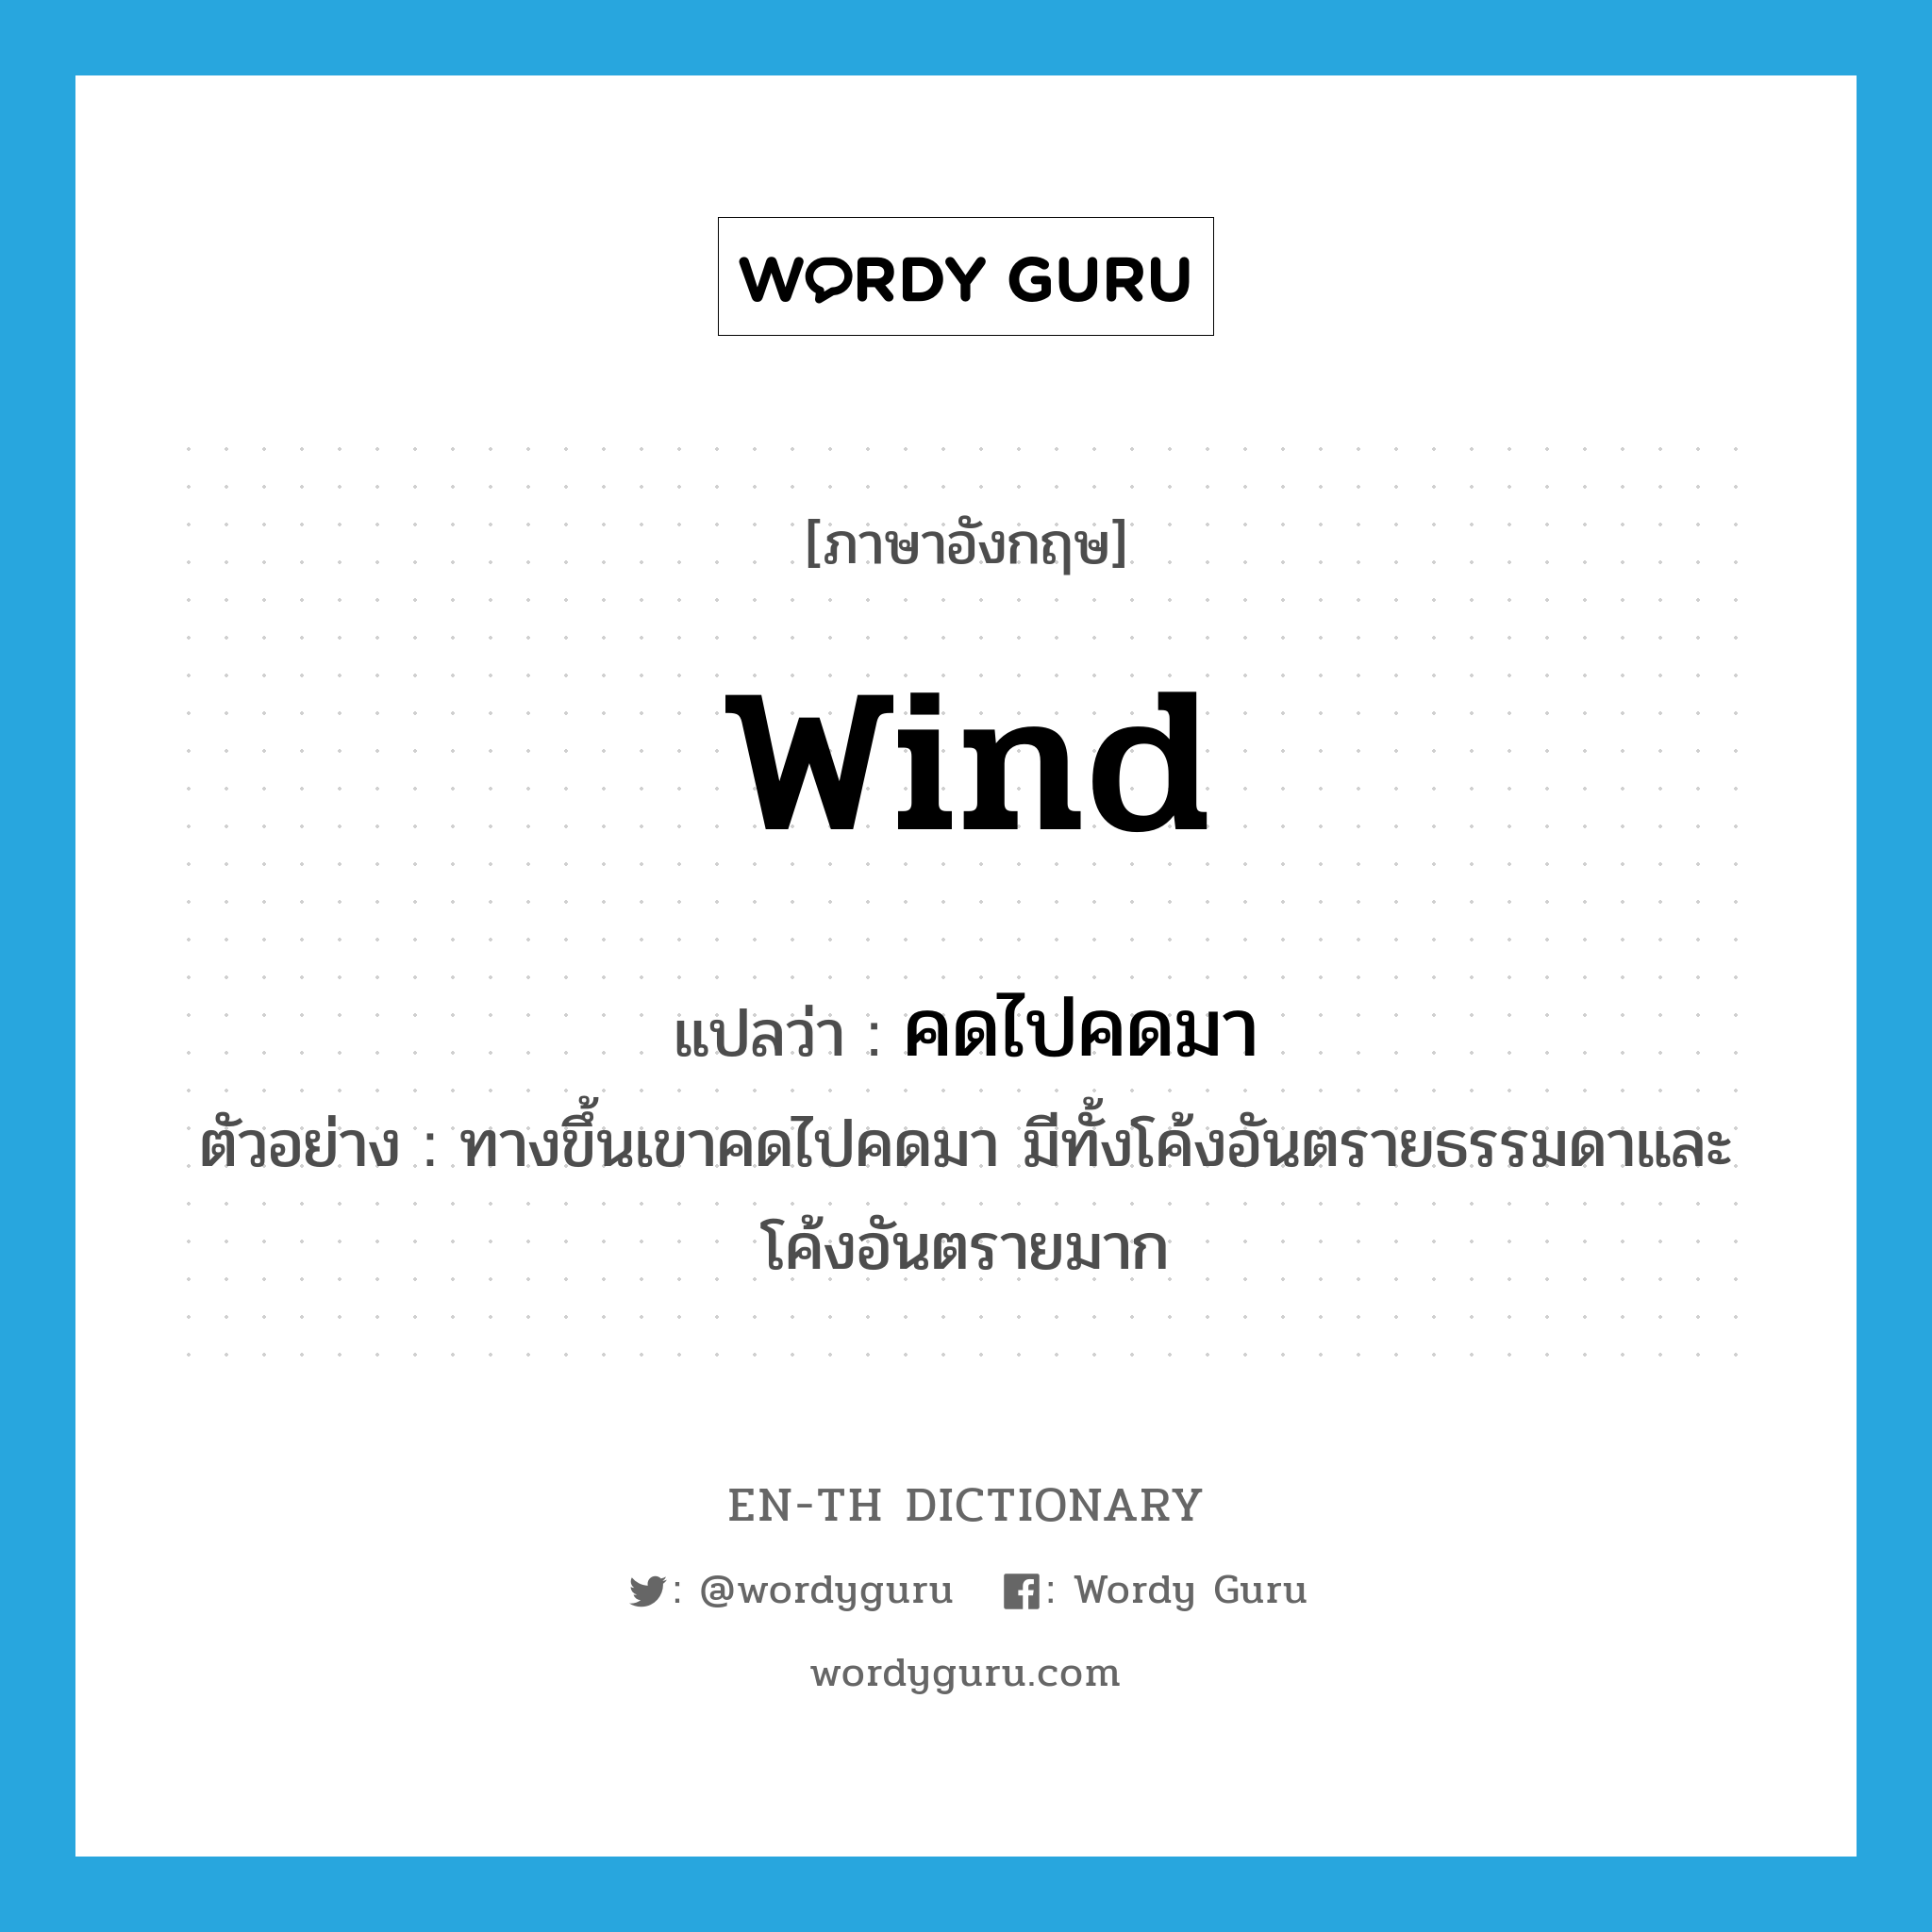 wind แปลว่า?, คำศัพท์ภาษาอังกฤษ wind แปลว่า คดไปคดมา ประเภท V ตัวอย่าง ทางขึ้นเขาคดไปคดมา มีทั้งโค้งอันตรายธรรมดาและโค้งอันตรายมาก หมวด V